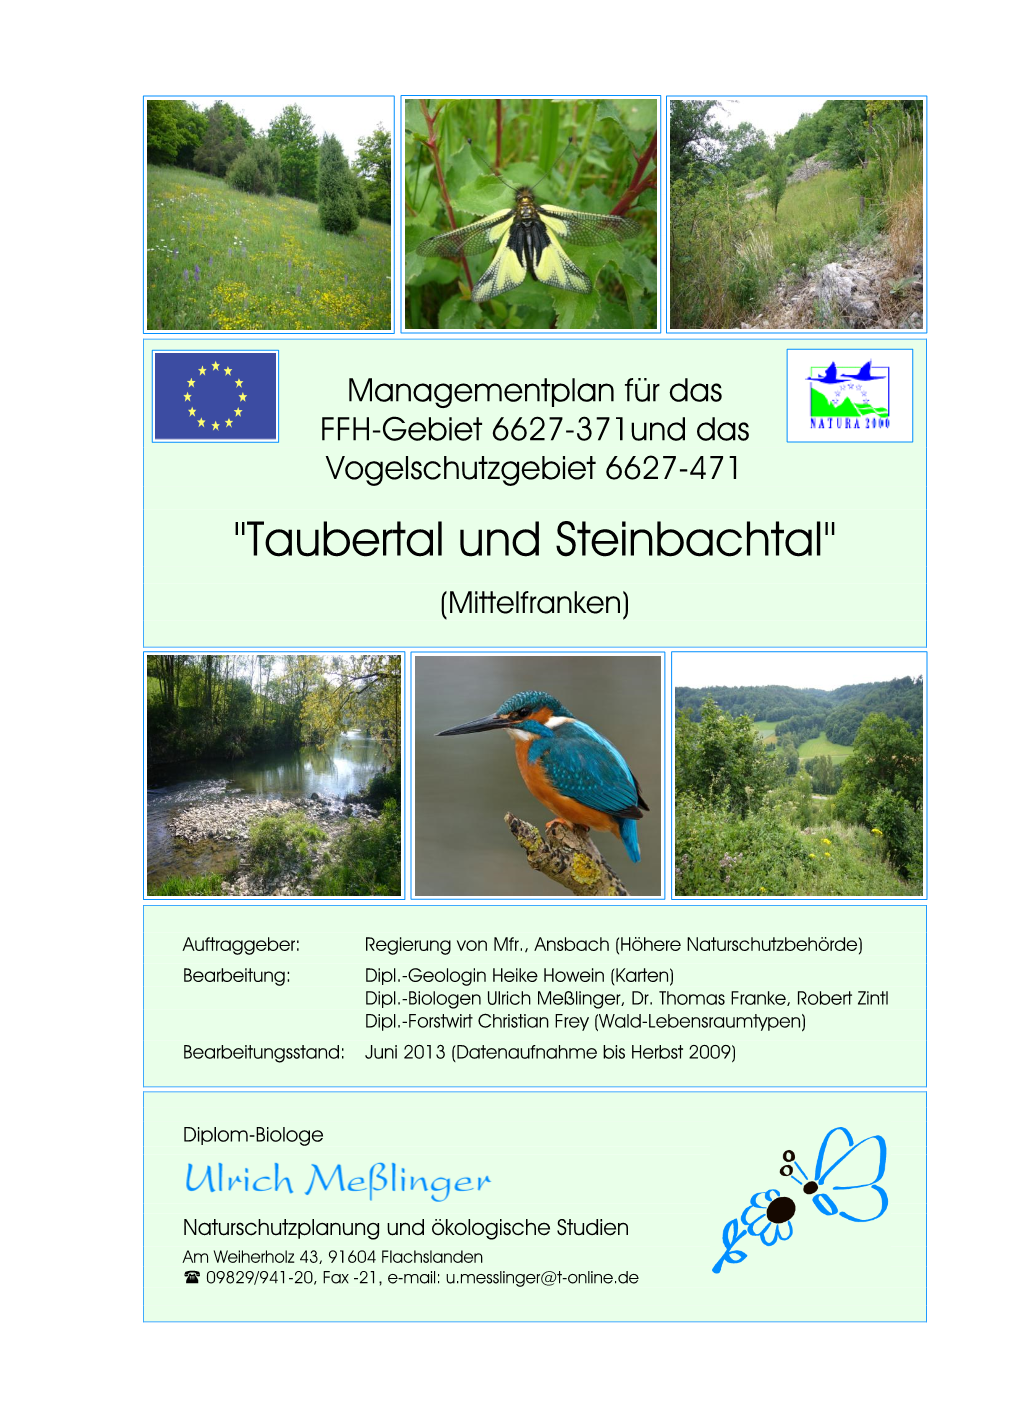 Managementplan Für Das FFH-Gebiet 6627-371 Taubertal Und Steinbachtal